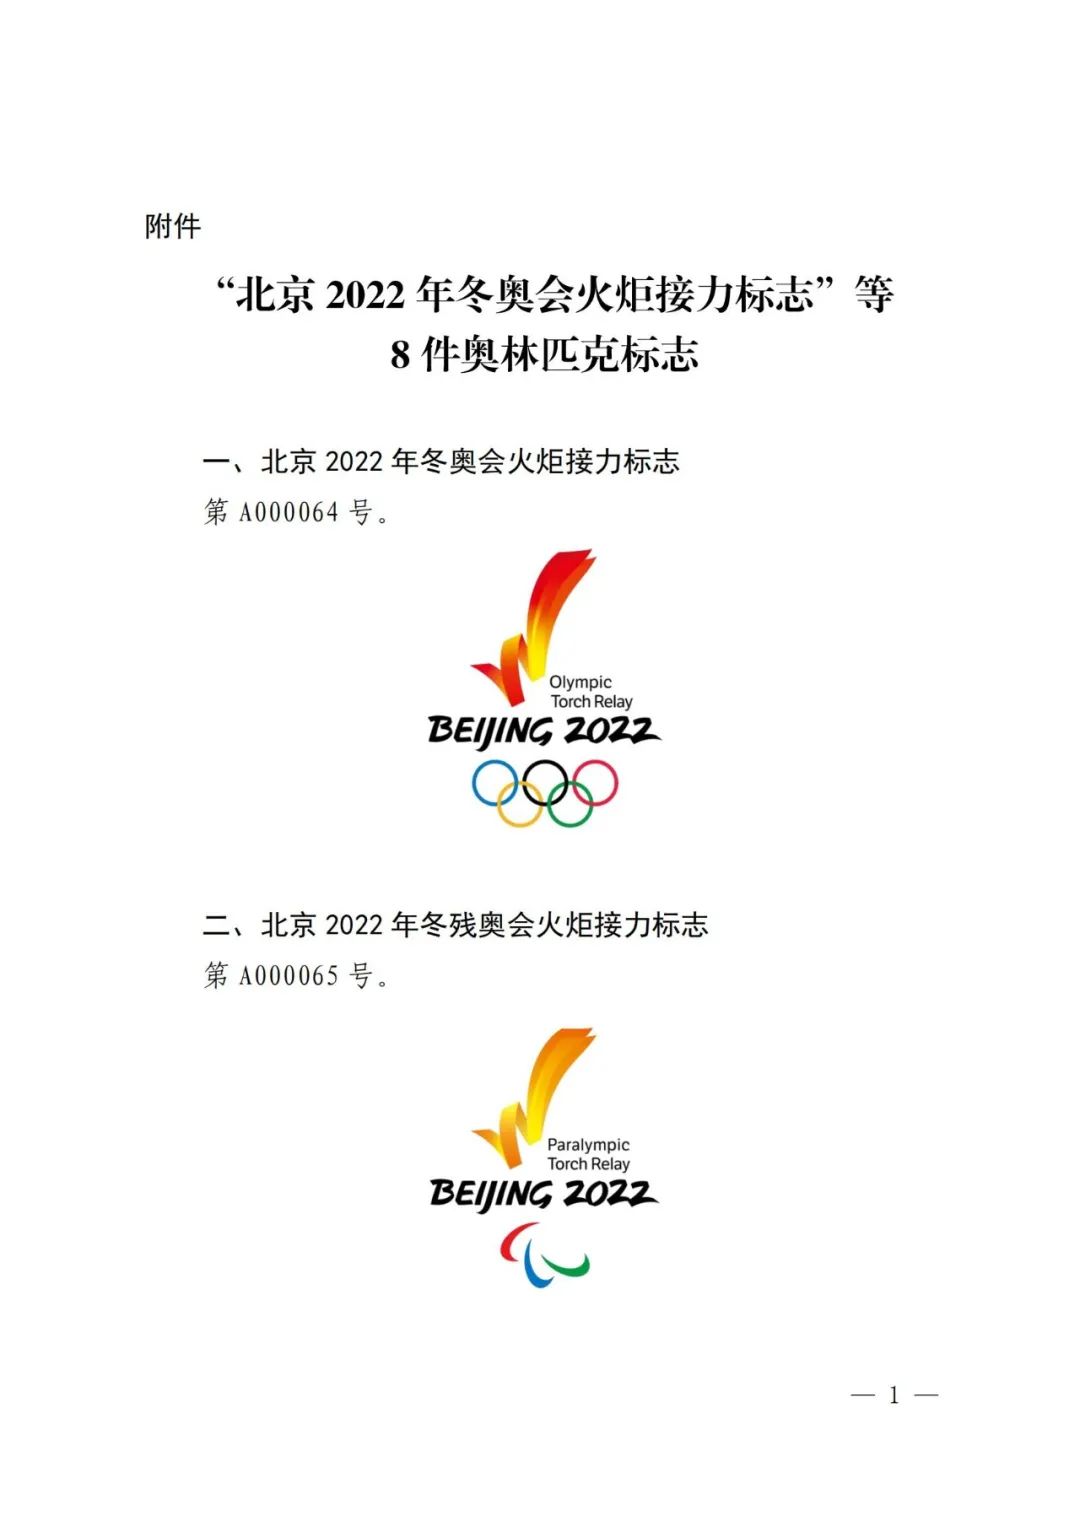 国知局：对“北京2022年冬奥会火炬接力标志”等标志实施保护的公告